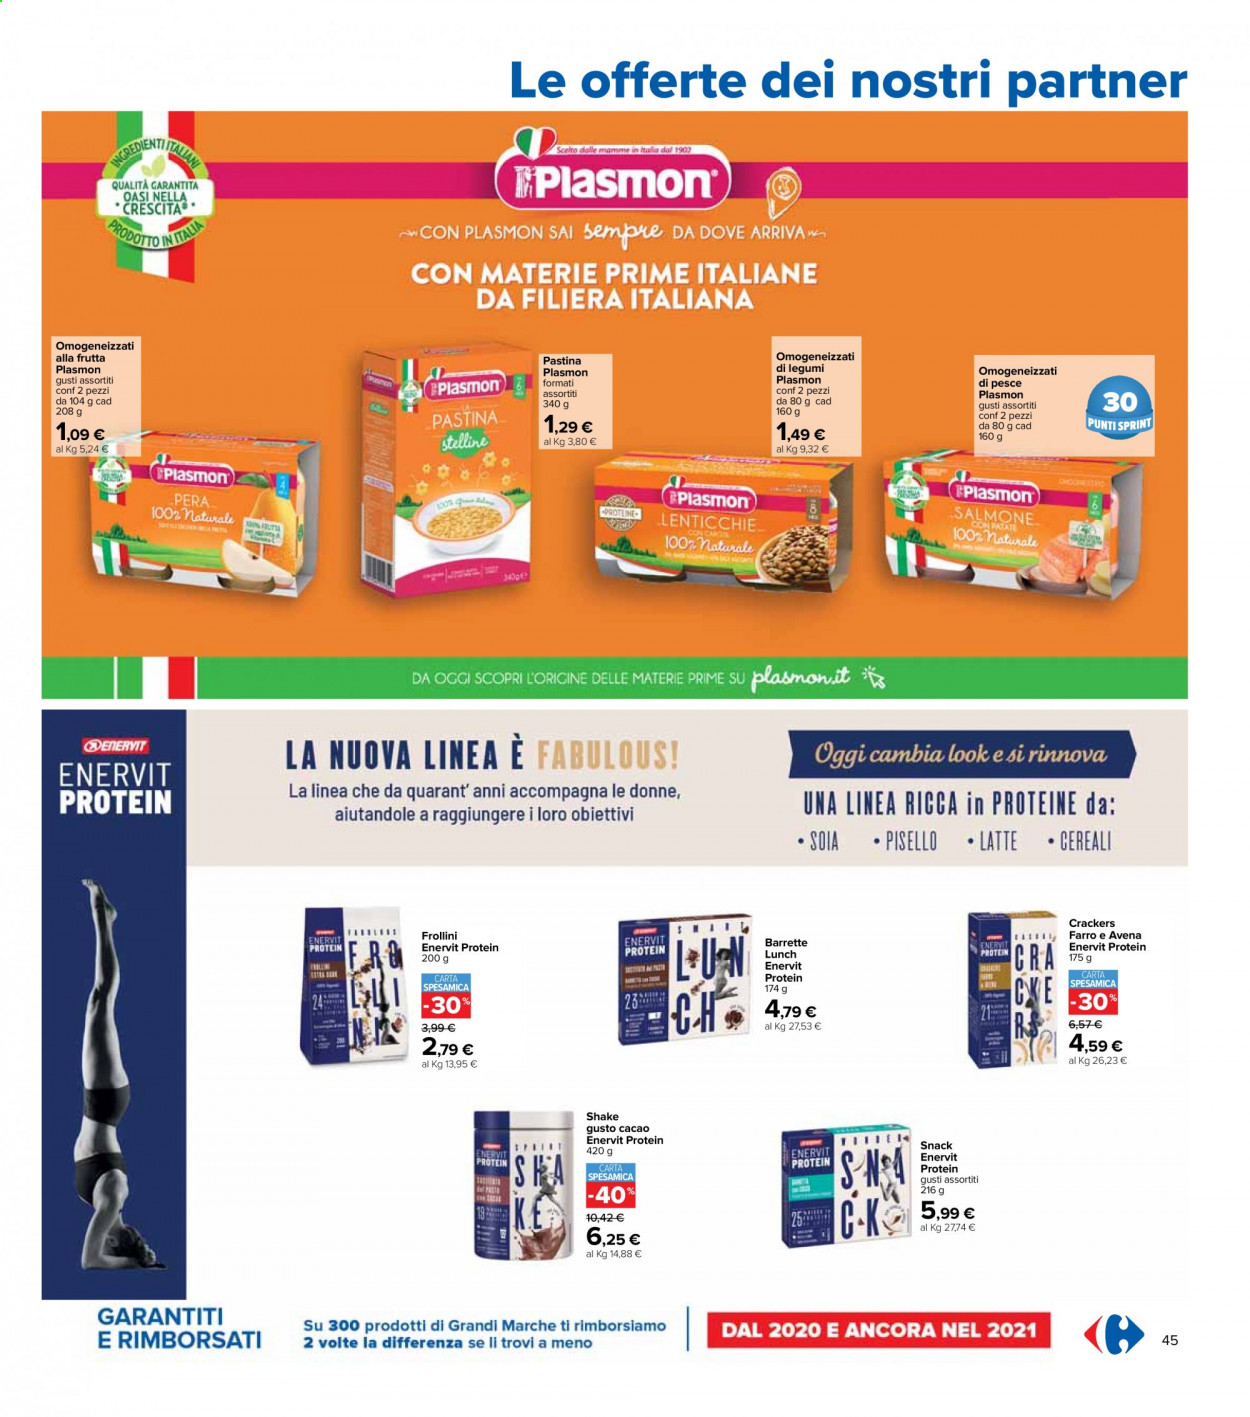 thumbnail - Volantino Carrefour - 6/4/2021 - 21/4/2021 - Prodotti in offerta - crackers, latte, frollini, barretta, cereali, soia, pastina, omogeneizzati, Plasmon. Pagina 45.